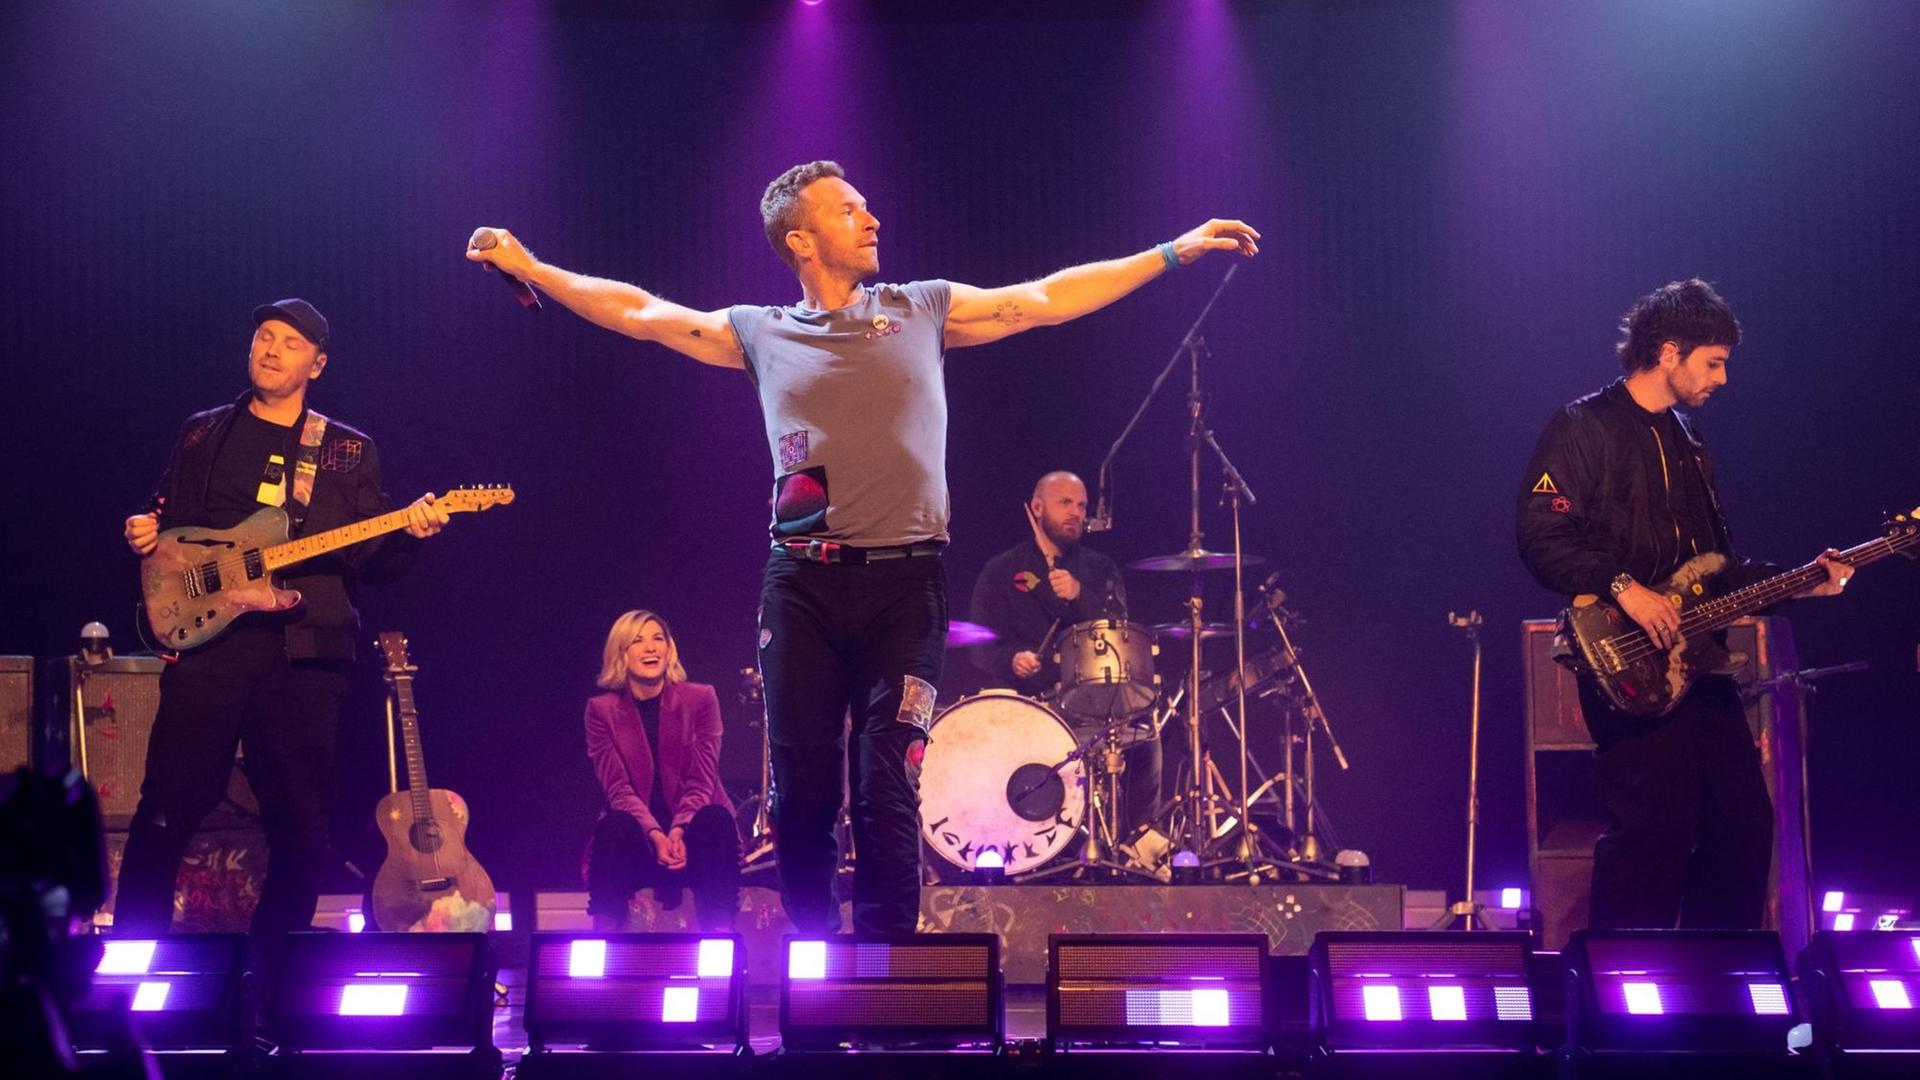 Coldplay auf der Bühne bei der "Graham Norton Show" von BBC in London.